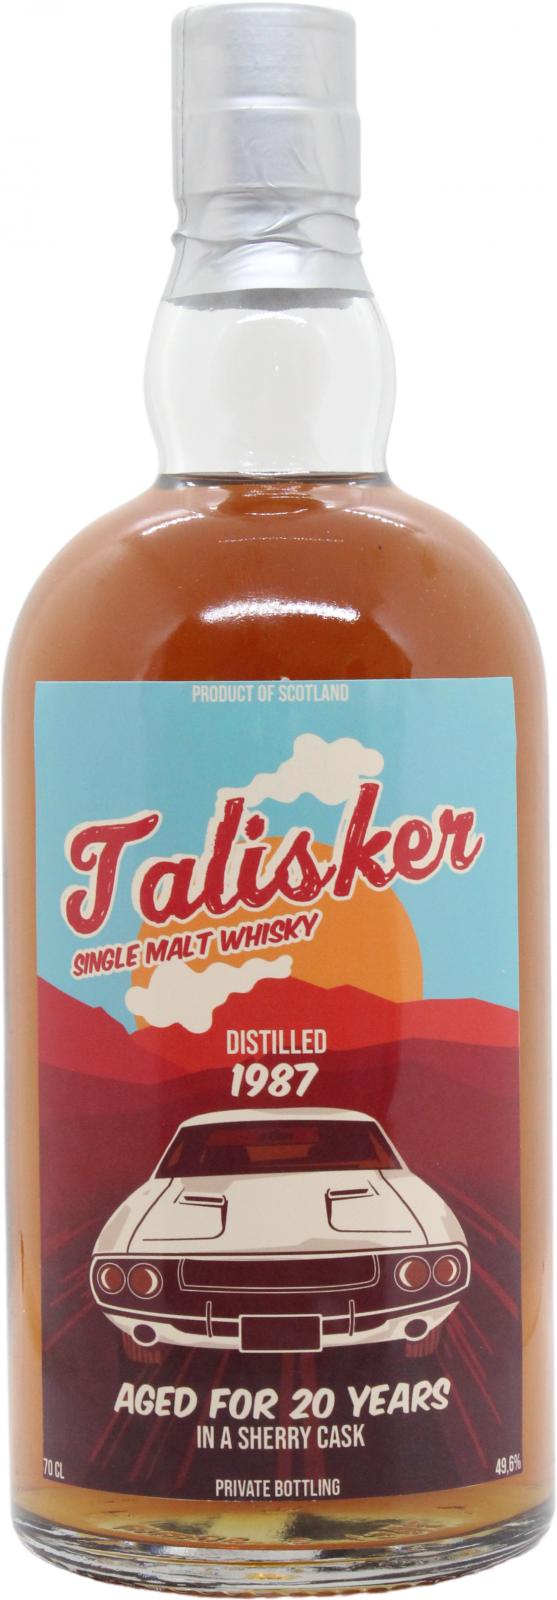 Talisker 1987 UD Sherry Cask Private Bottling 49.6% 700ml